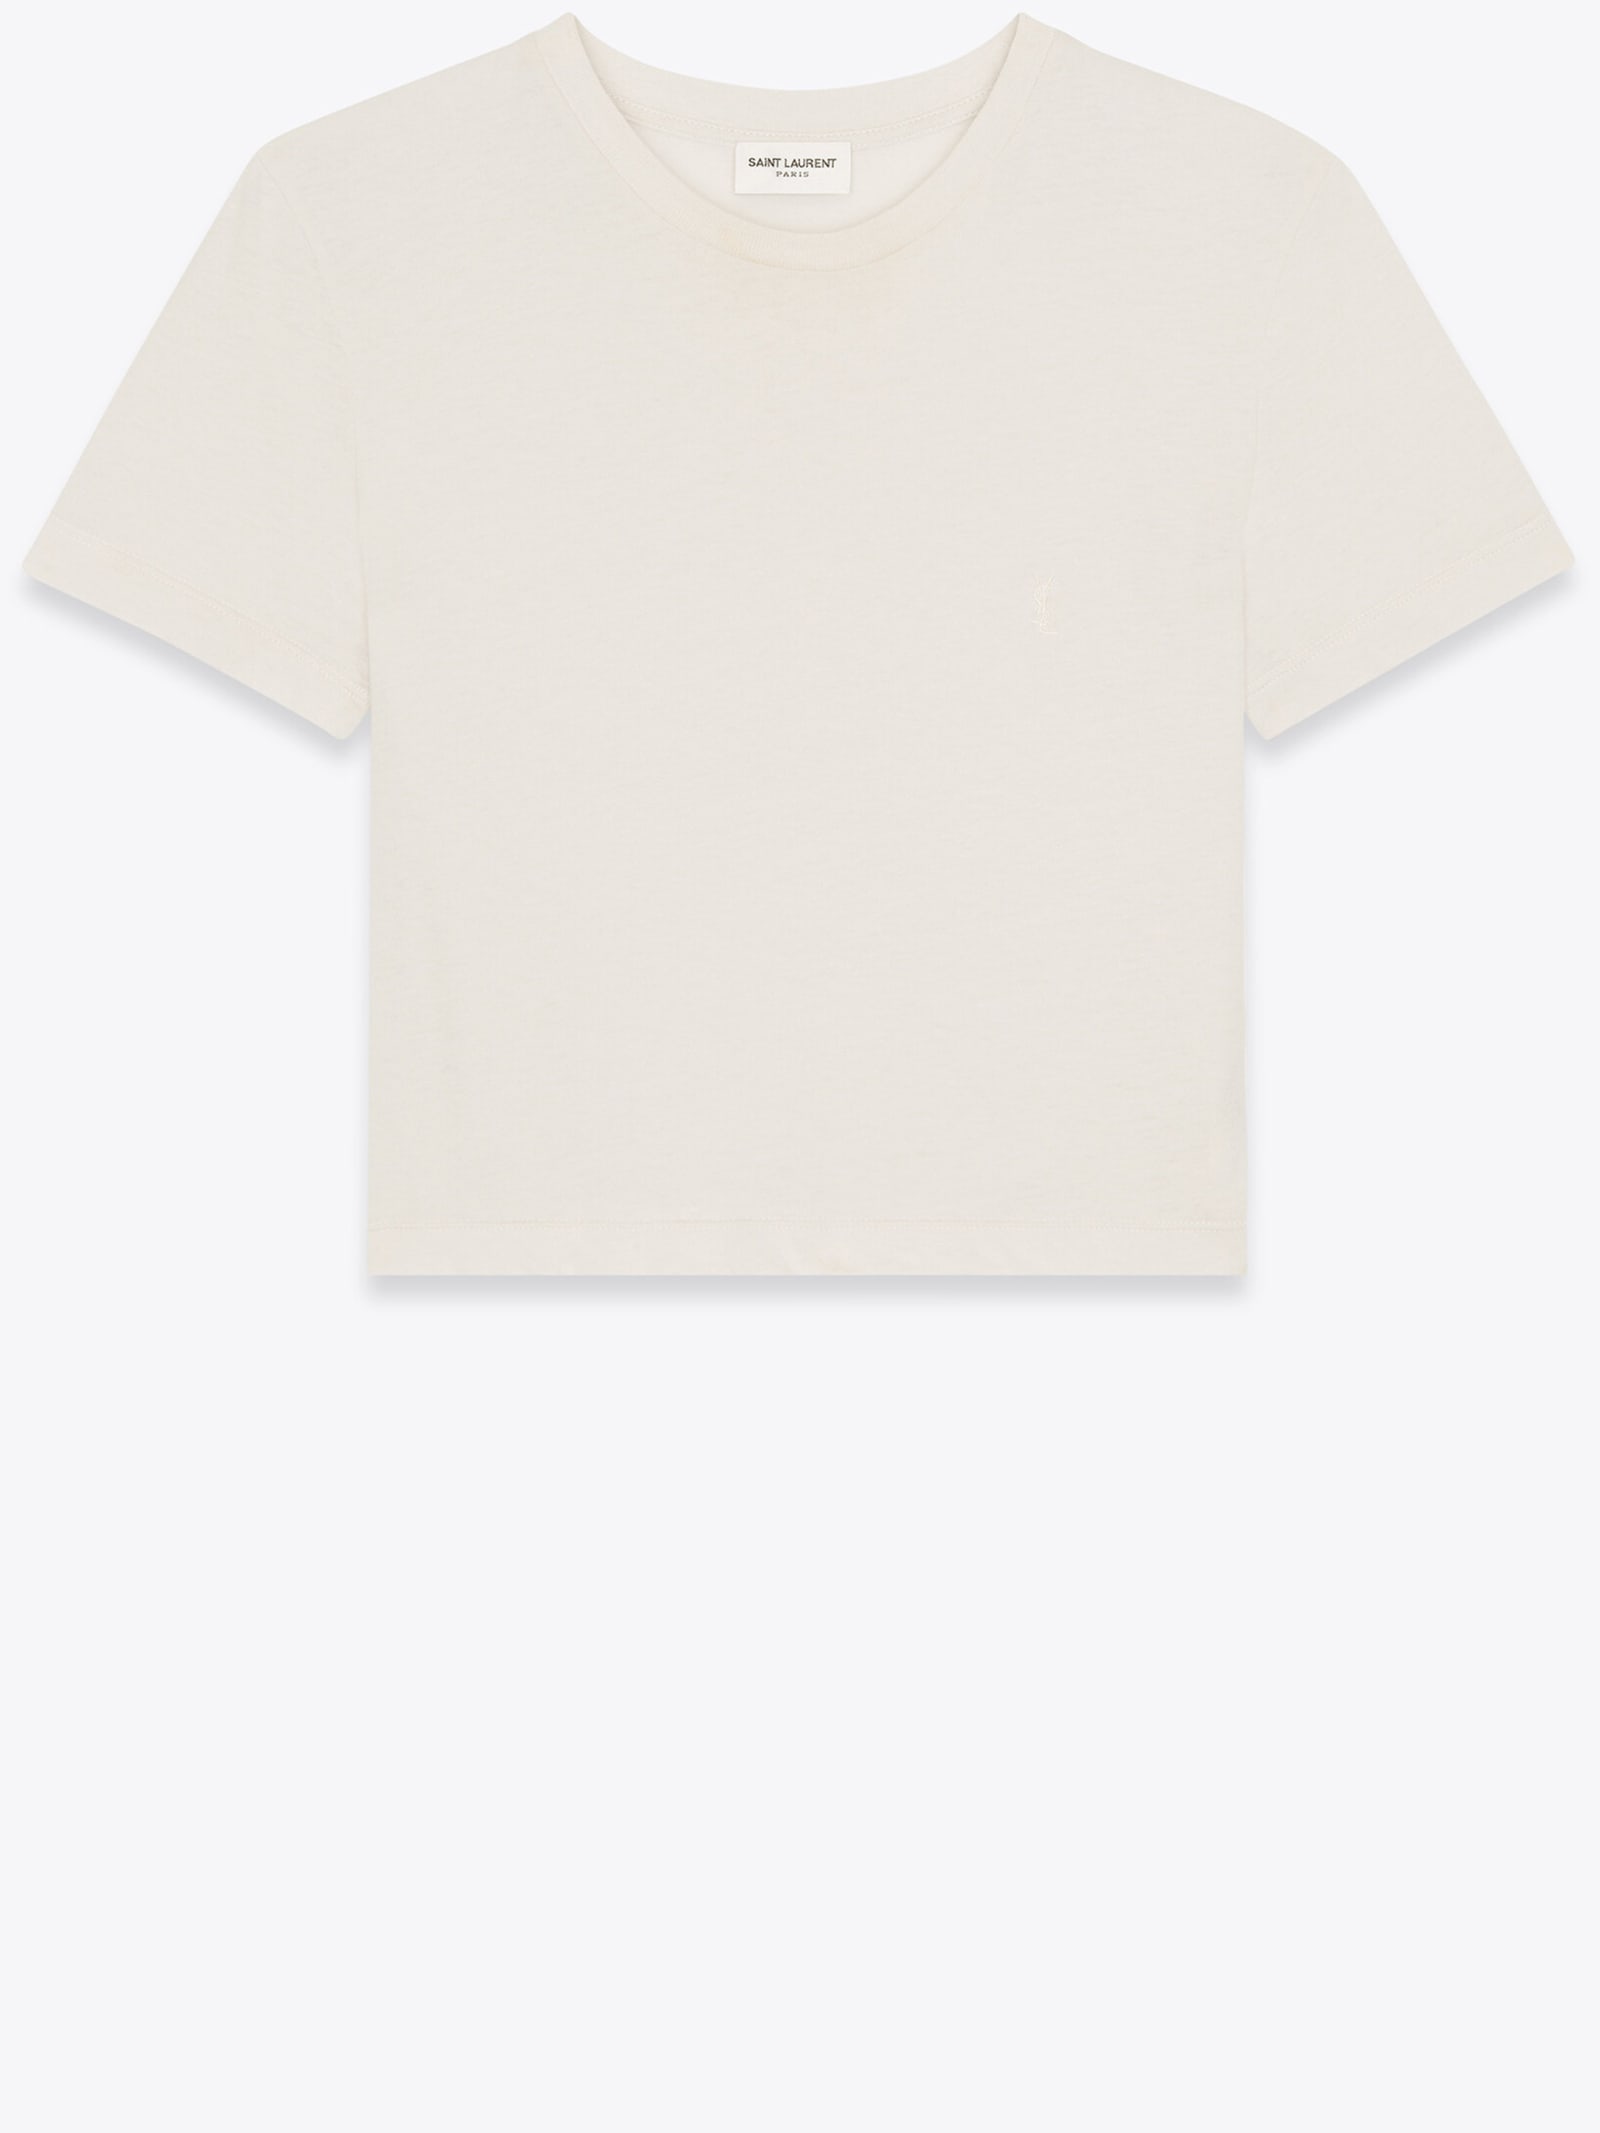 Saint Laurent Monogram Cropped T-shirt